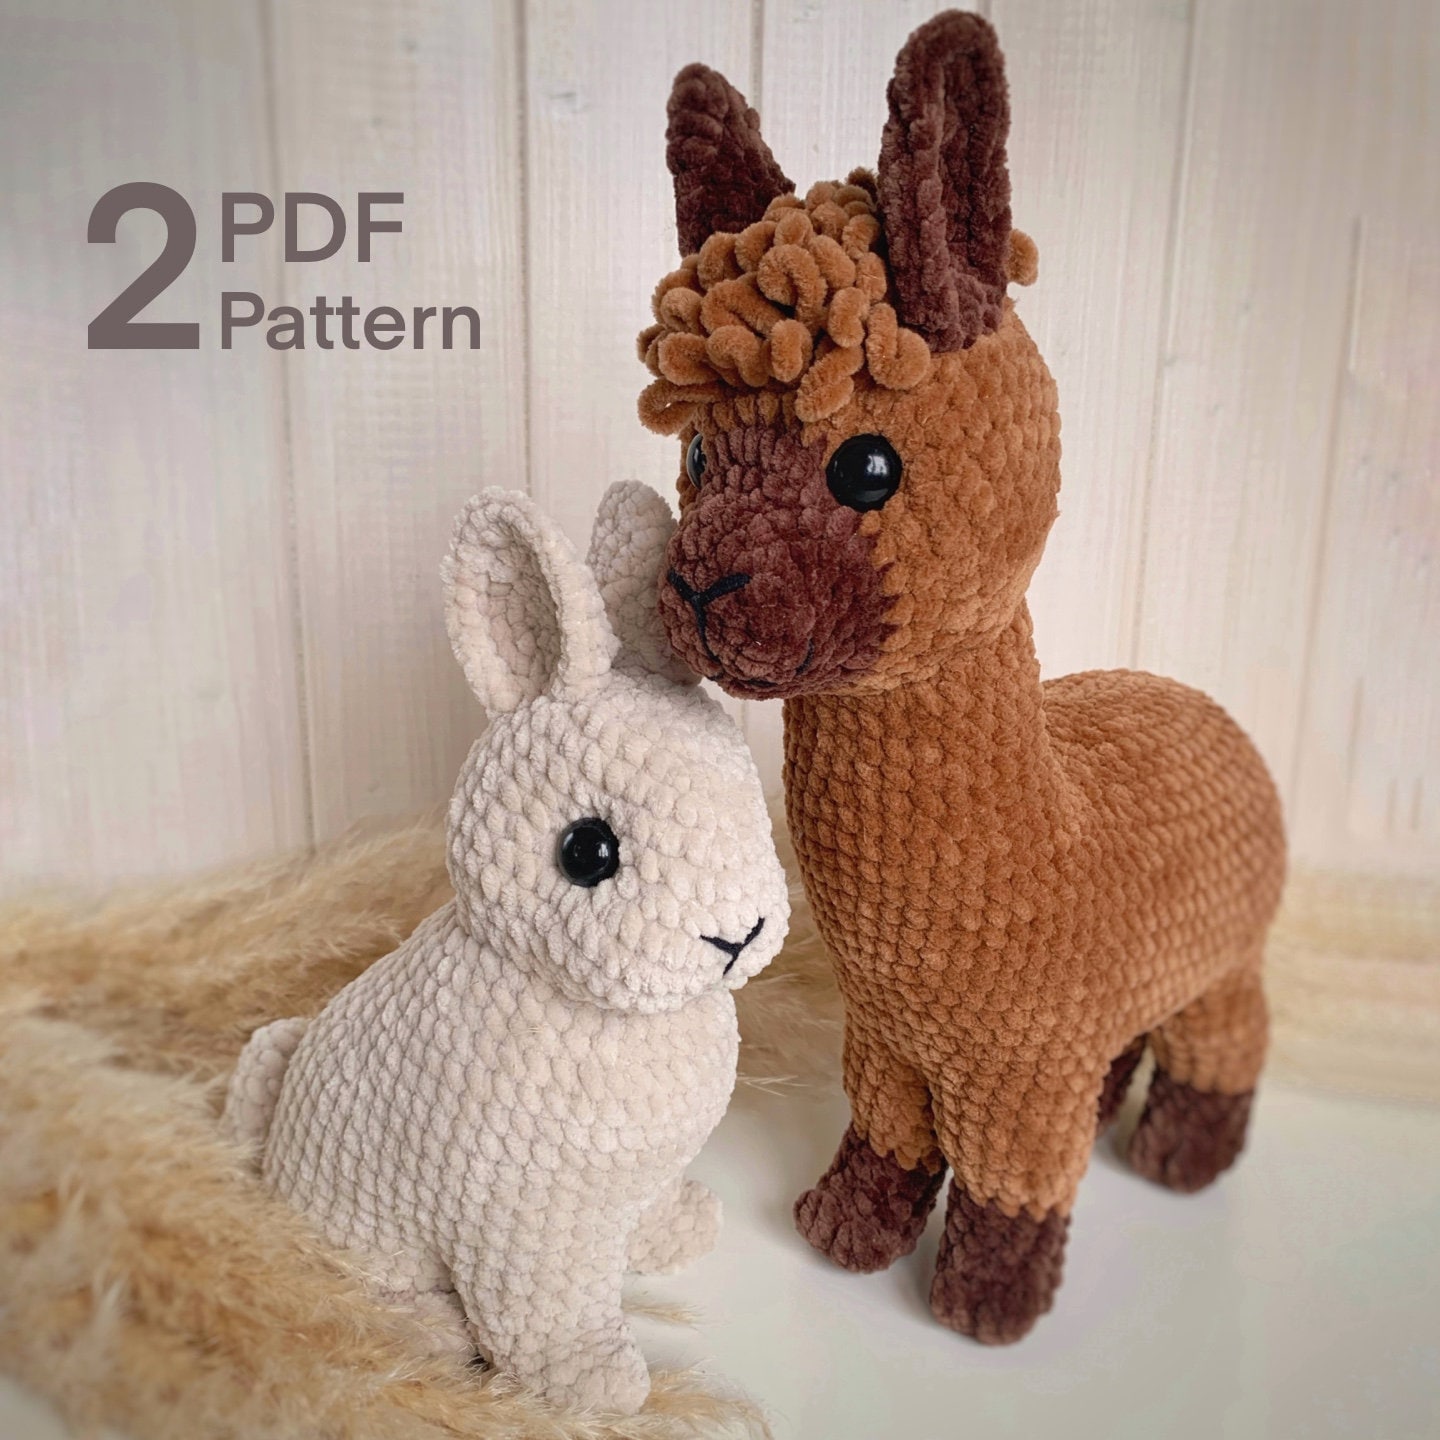 2023 Handmade DIY Animal Crochet Knitting Kit Wool Yarn Thread Crochet  Material Kit For Beginner Pendant Dolls Christmas Gifts - AliExpress